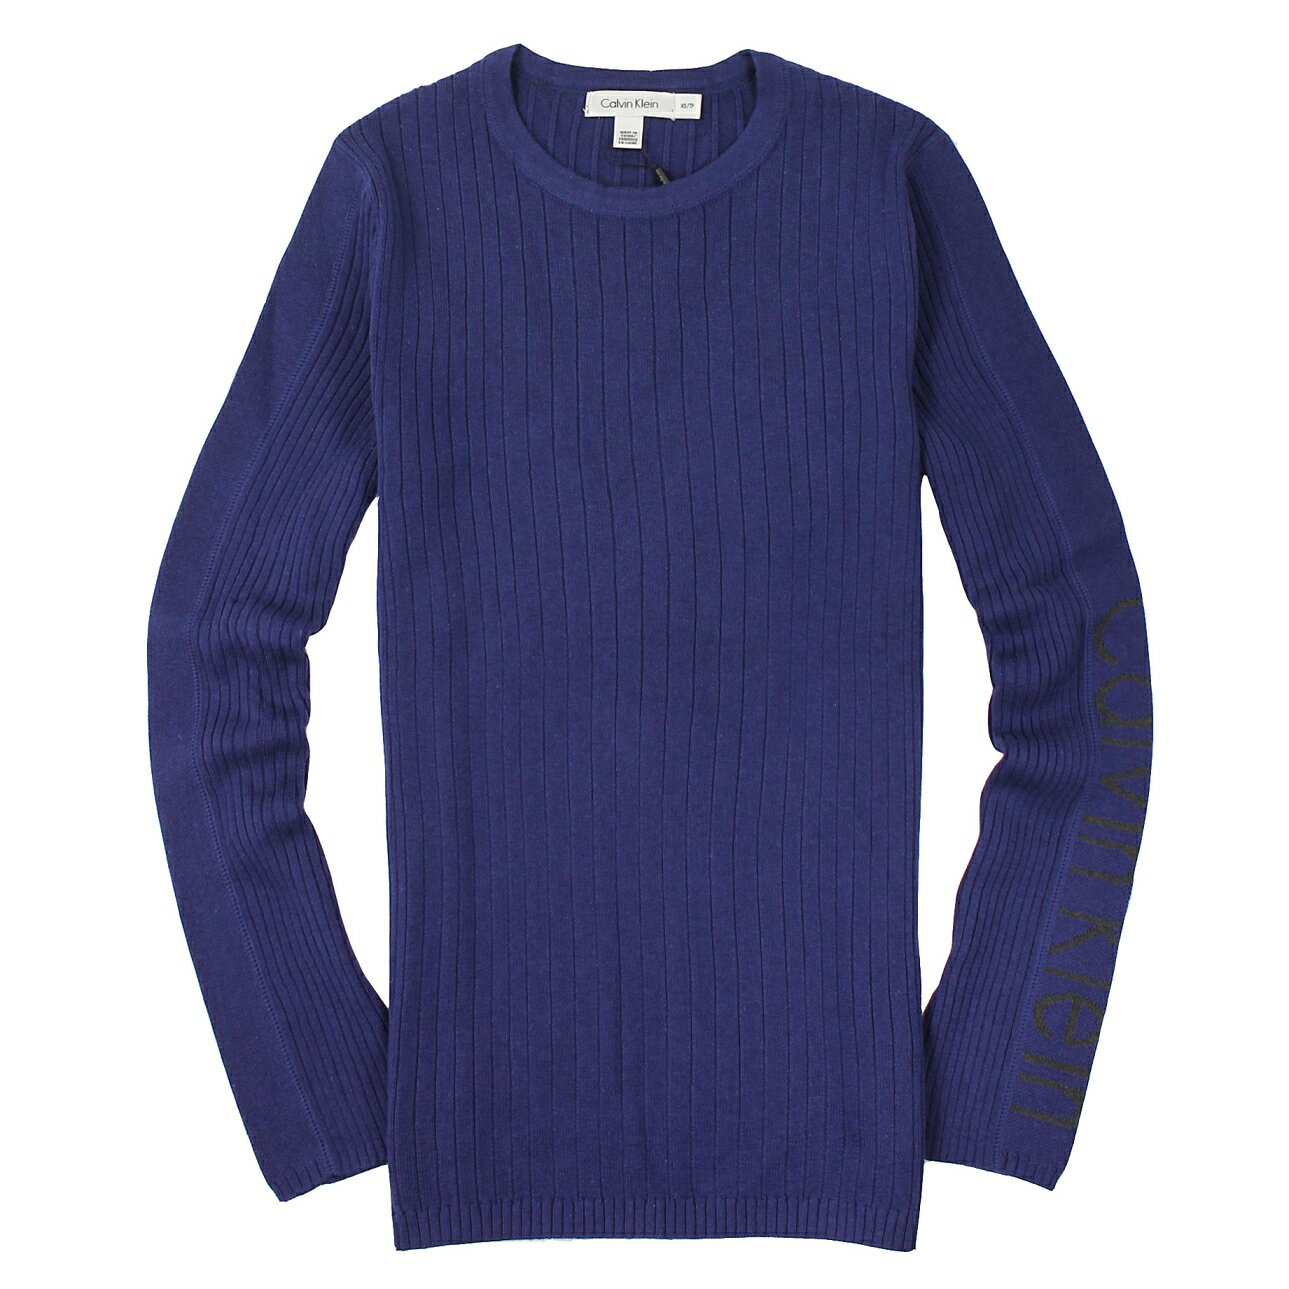 美國百分百【全新真品】Calvin Klein 針織衫 CK 線衫 上衣 寶藍 薄 圓領 Logo 棉質 男 XS S M號 A677